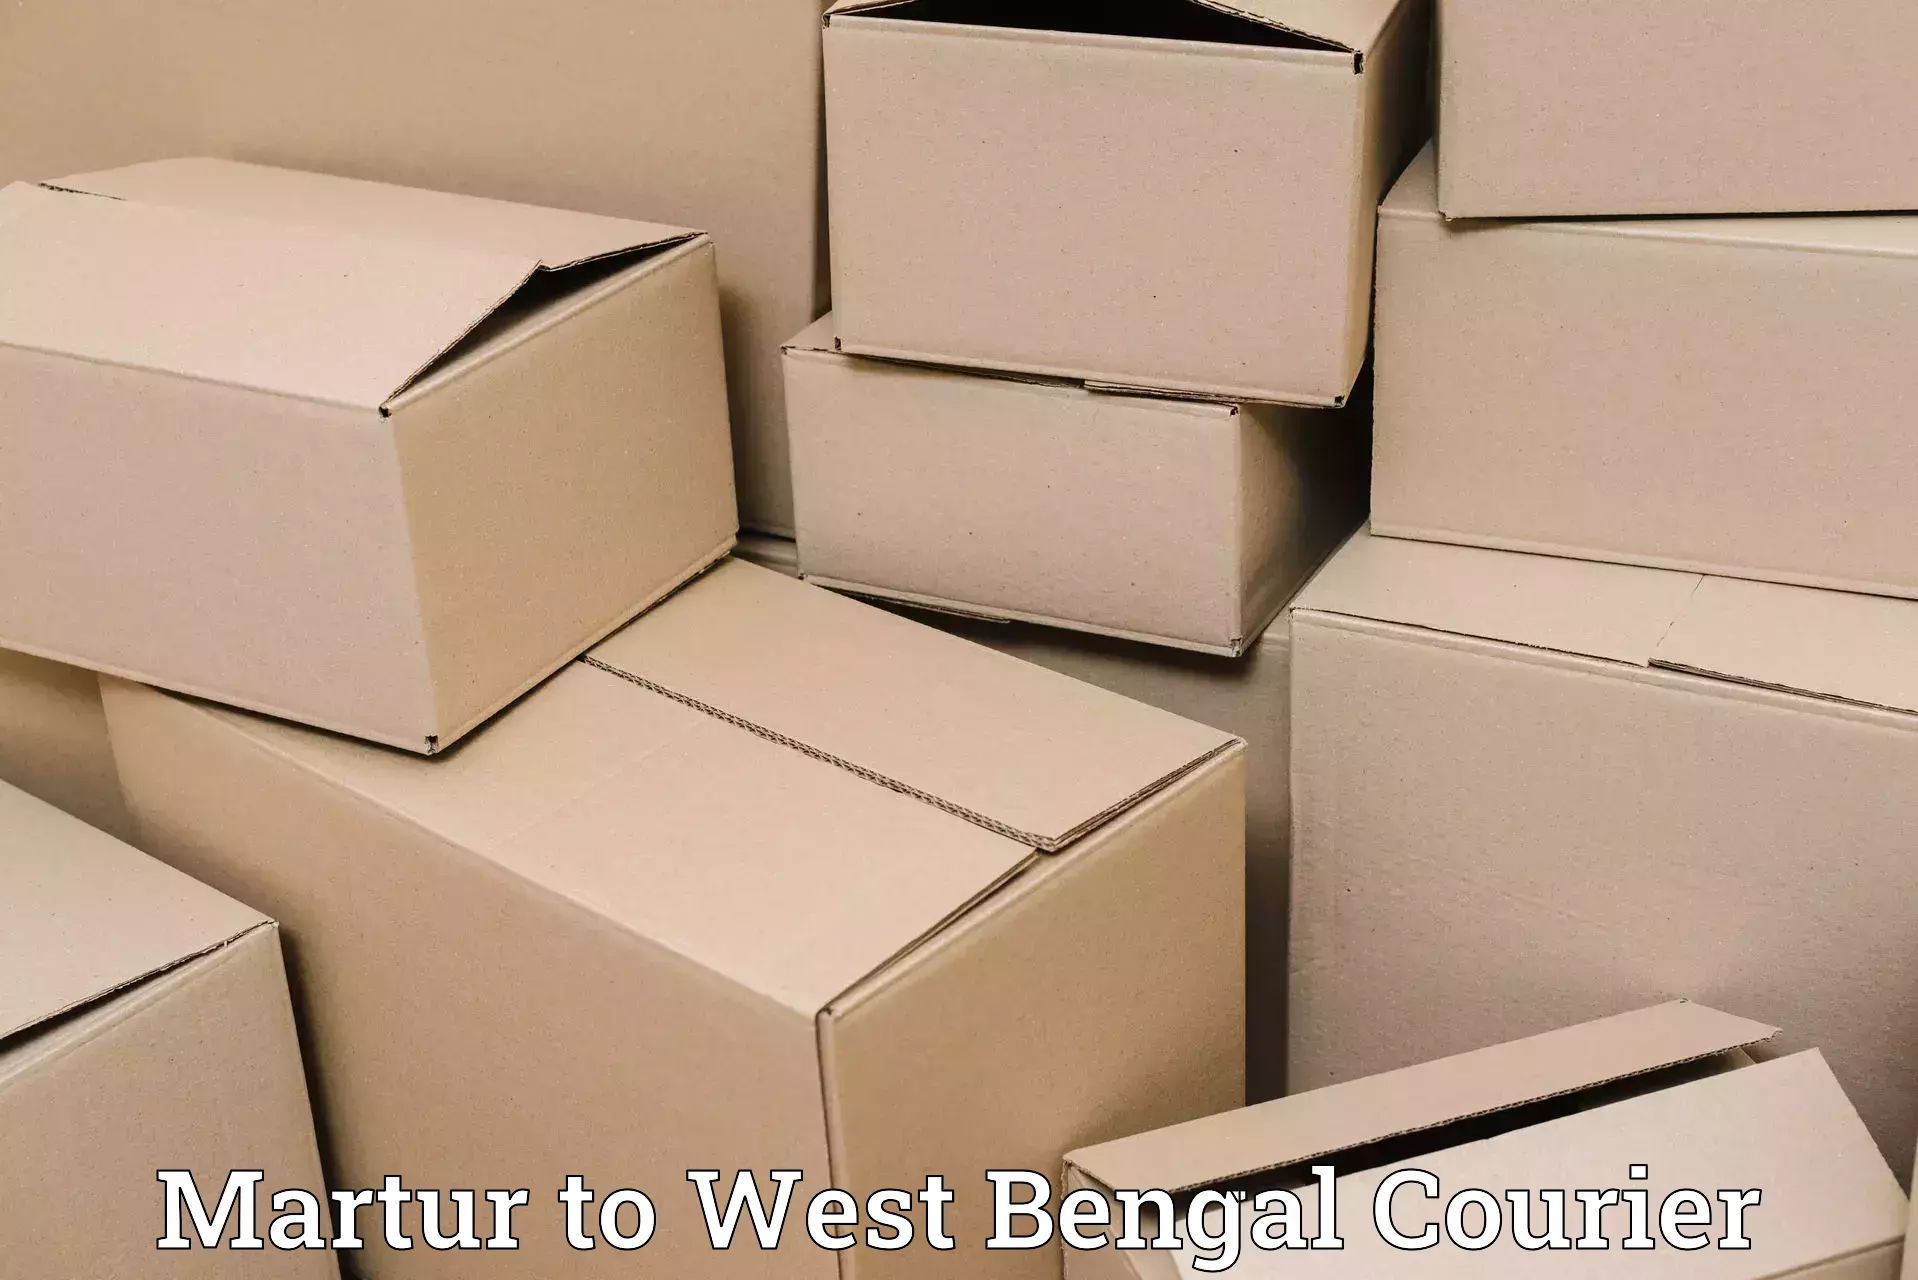 Flexible parcel services Martur to West Bengal